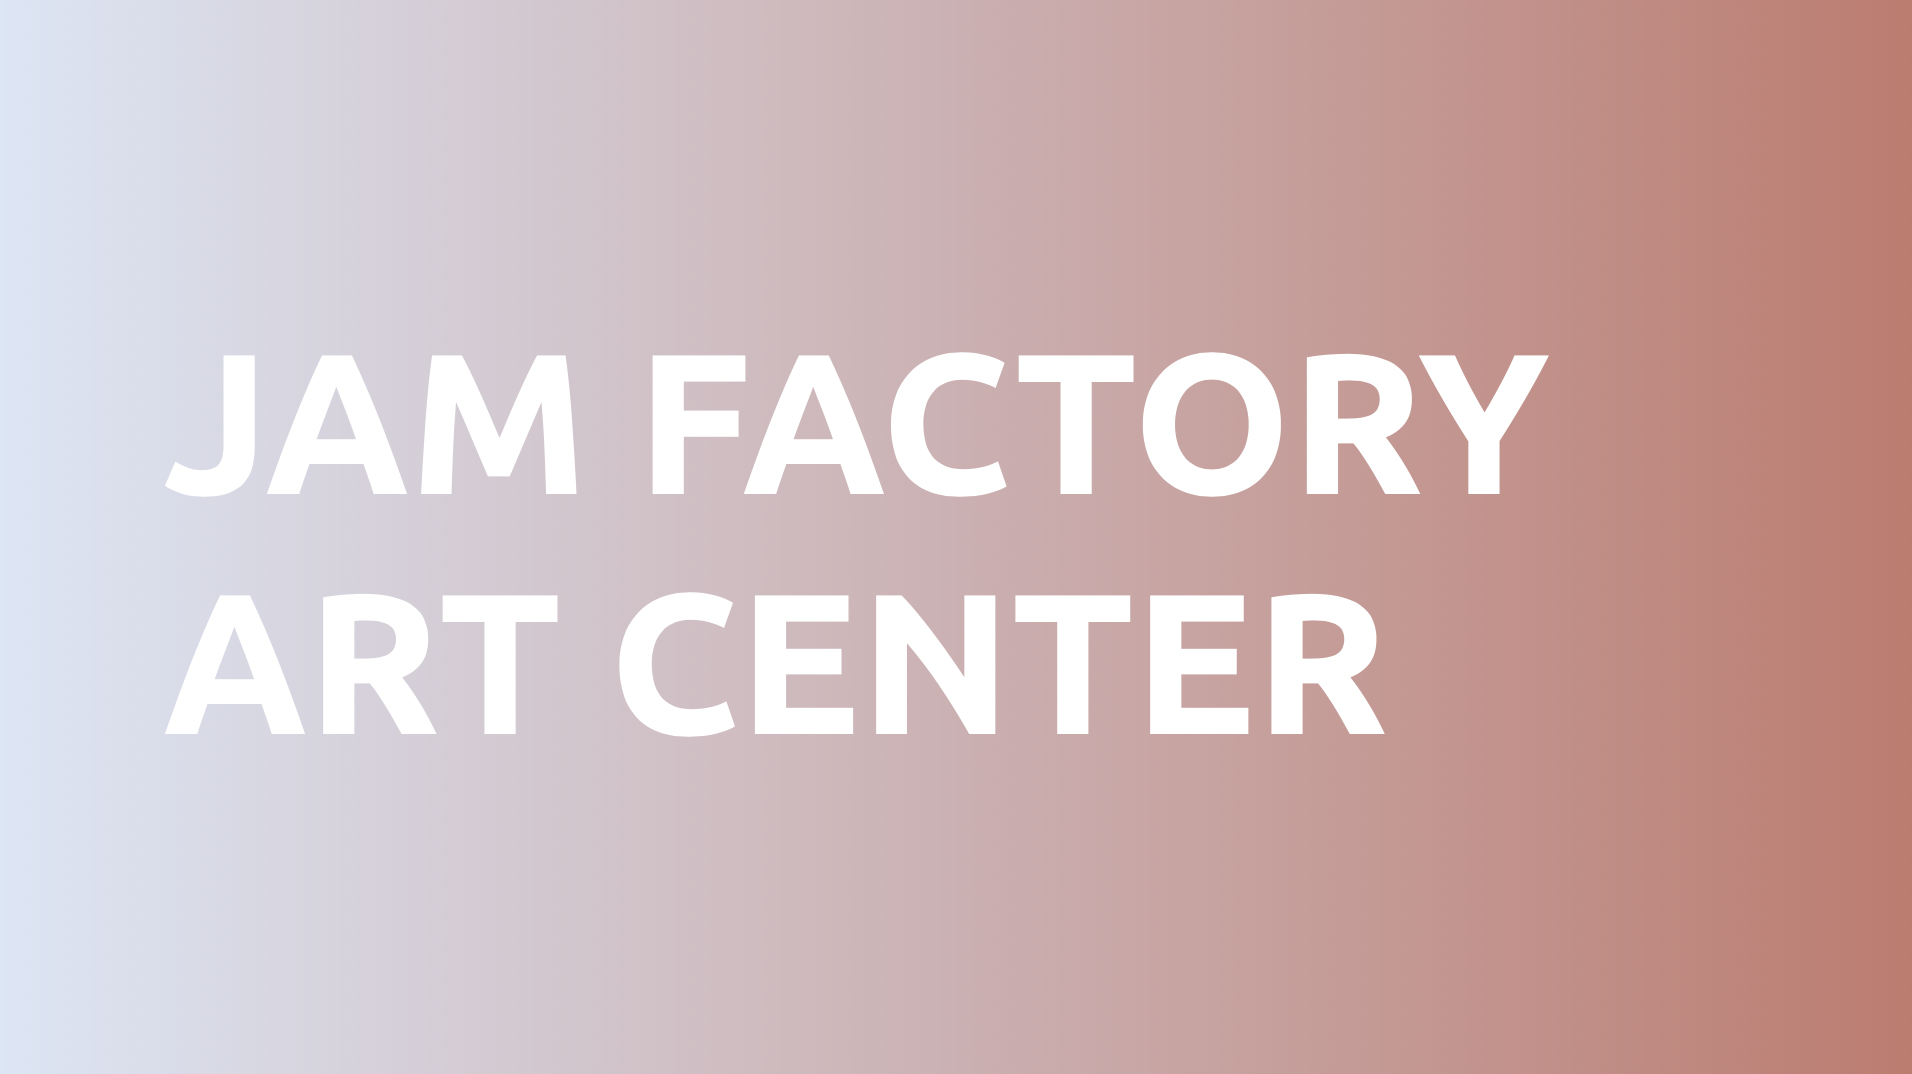 Jam Factory Art Center